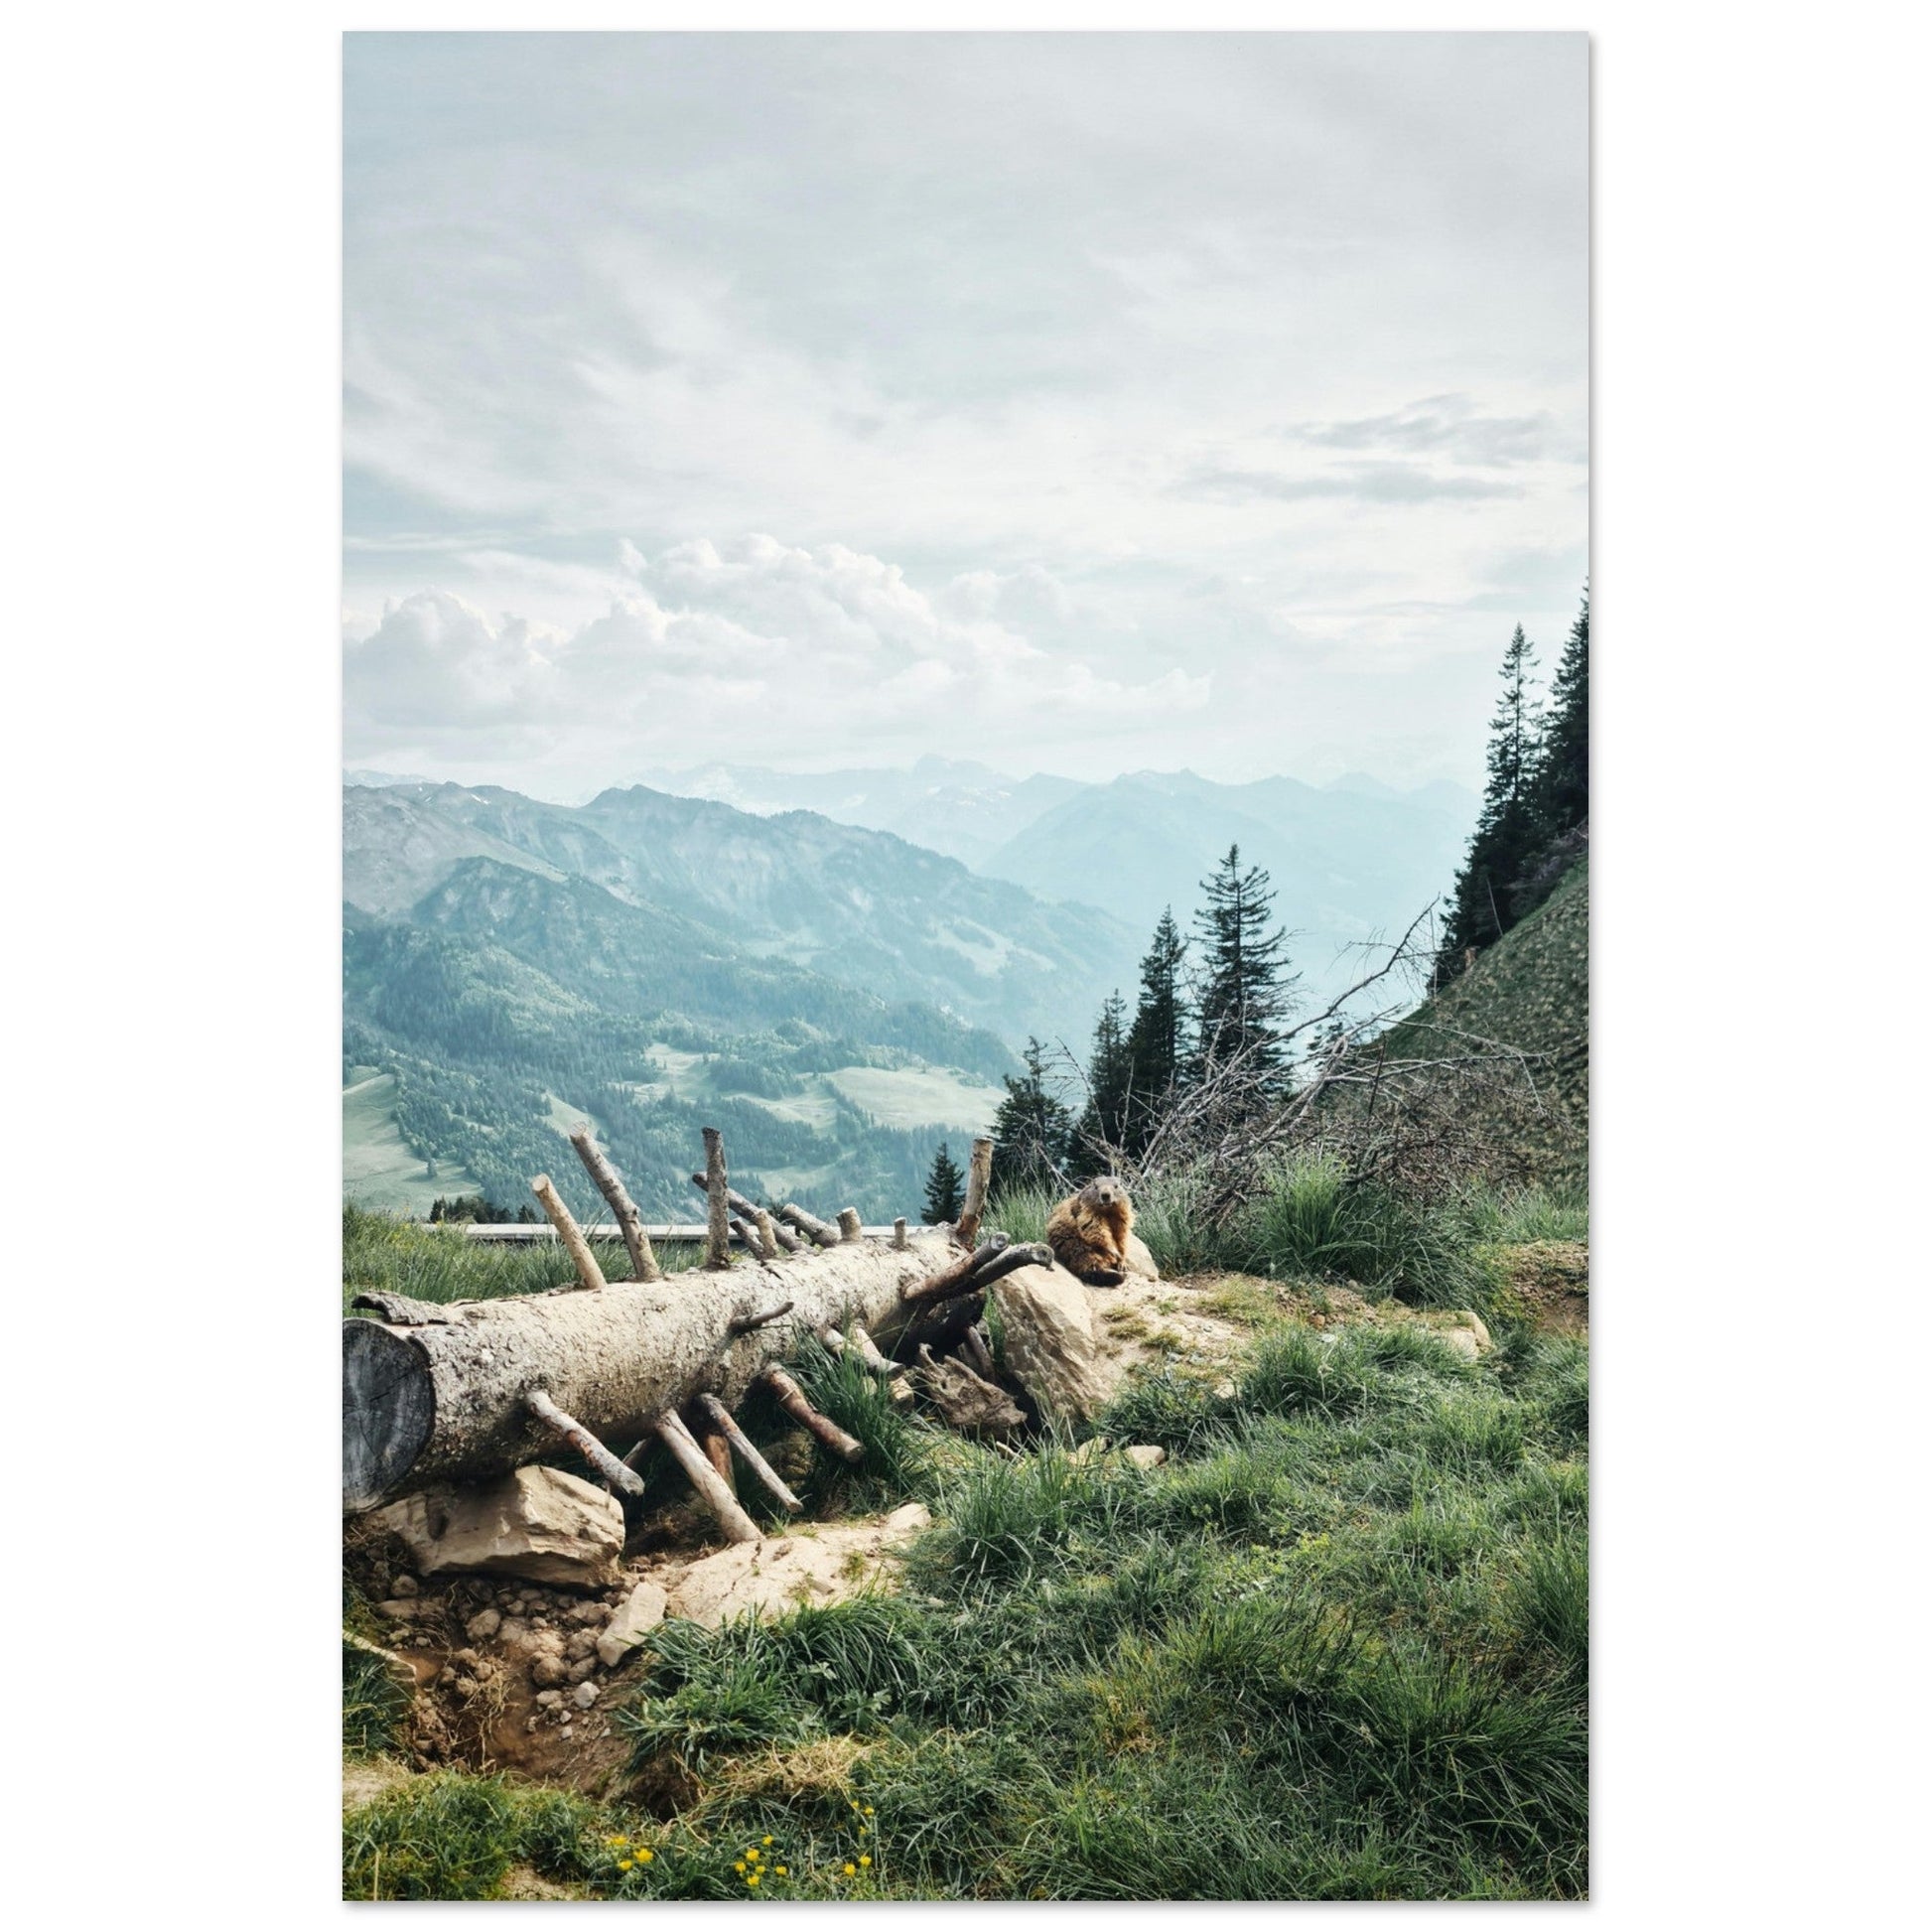 Vente Photo d'une marmotte dans les Alpes #1 - Tableau photo paysage